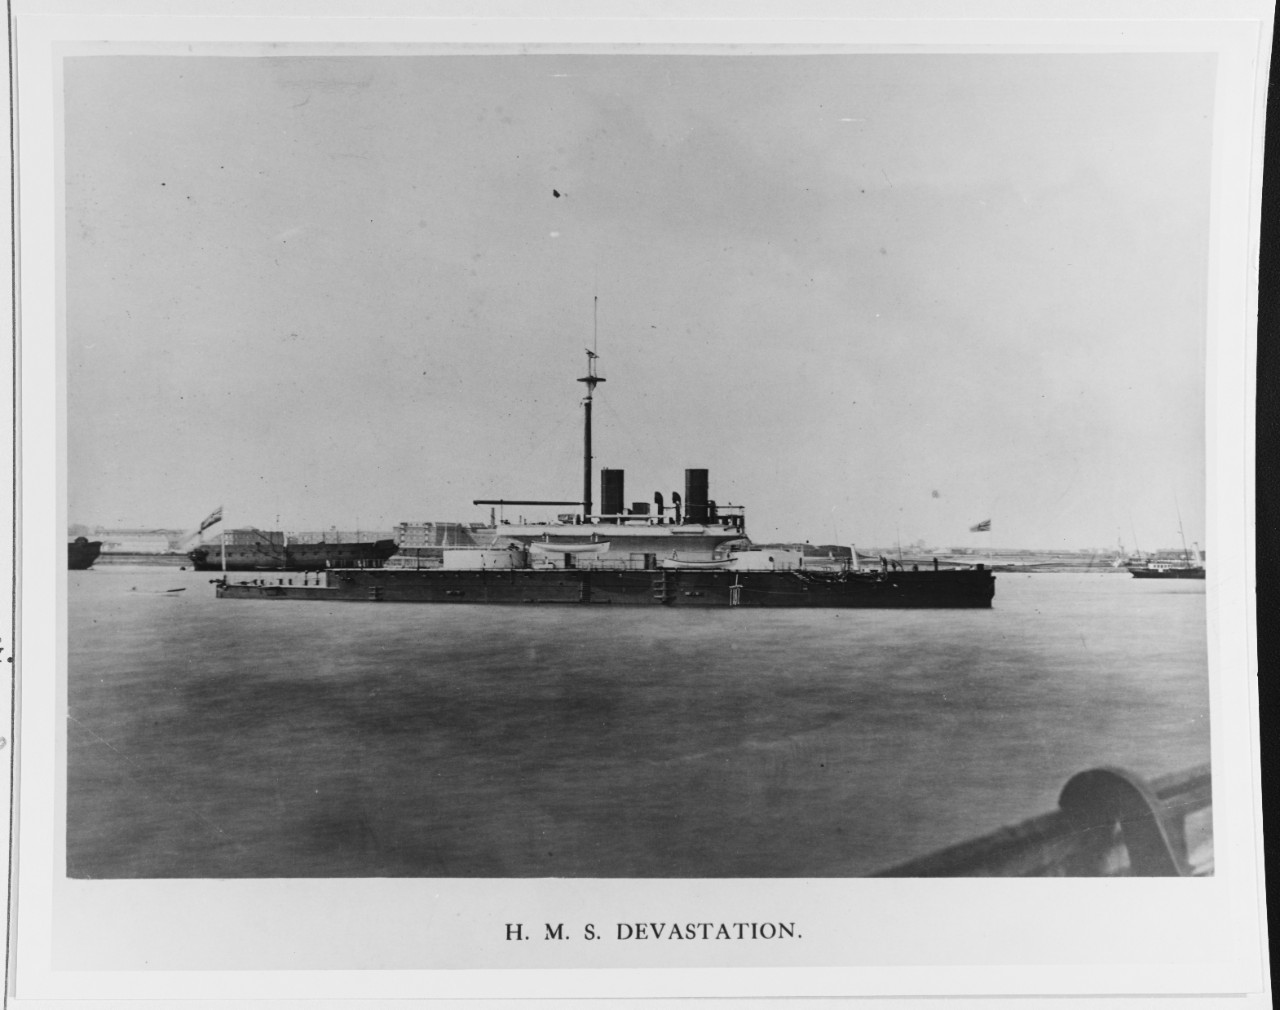 HMS DEVASTATION (British Battleship, 1871)